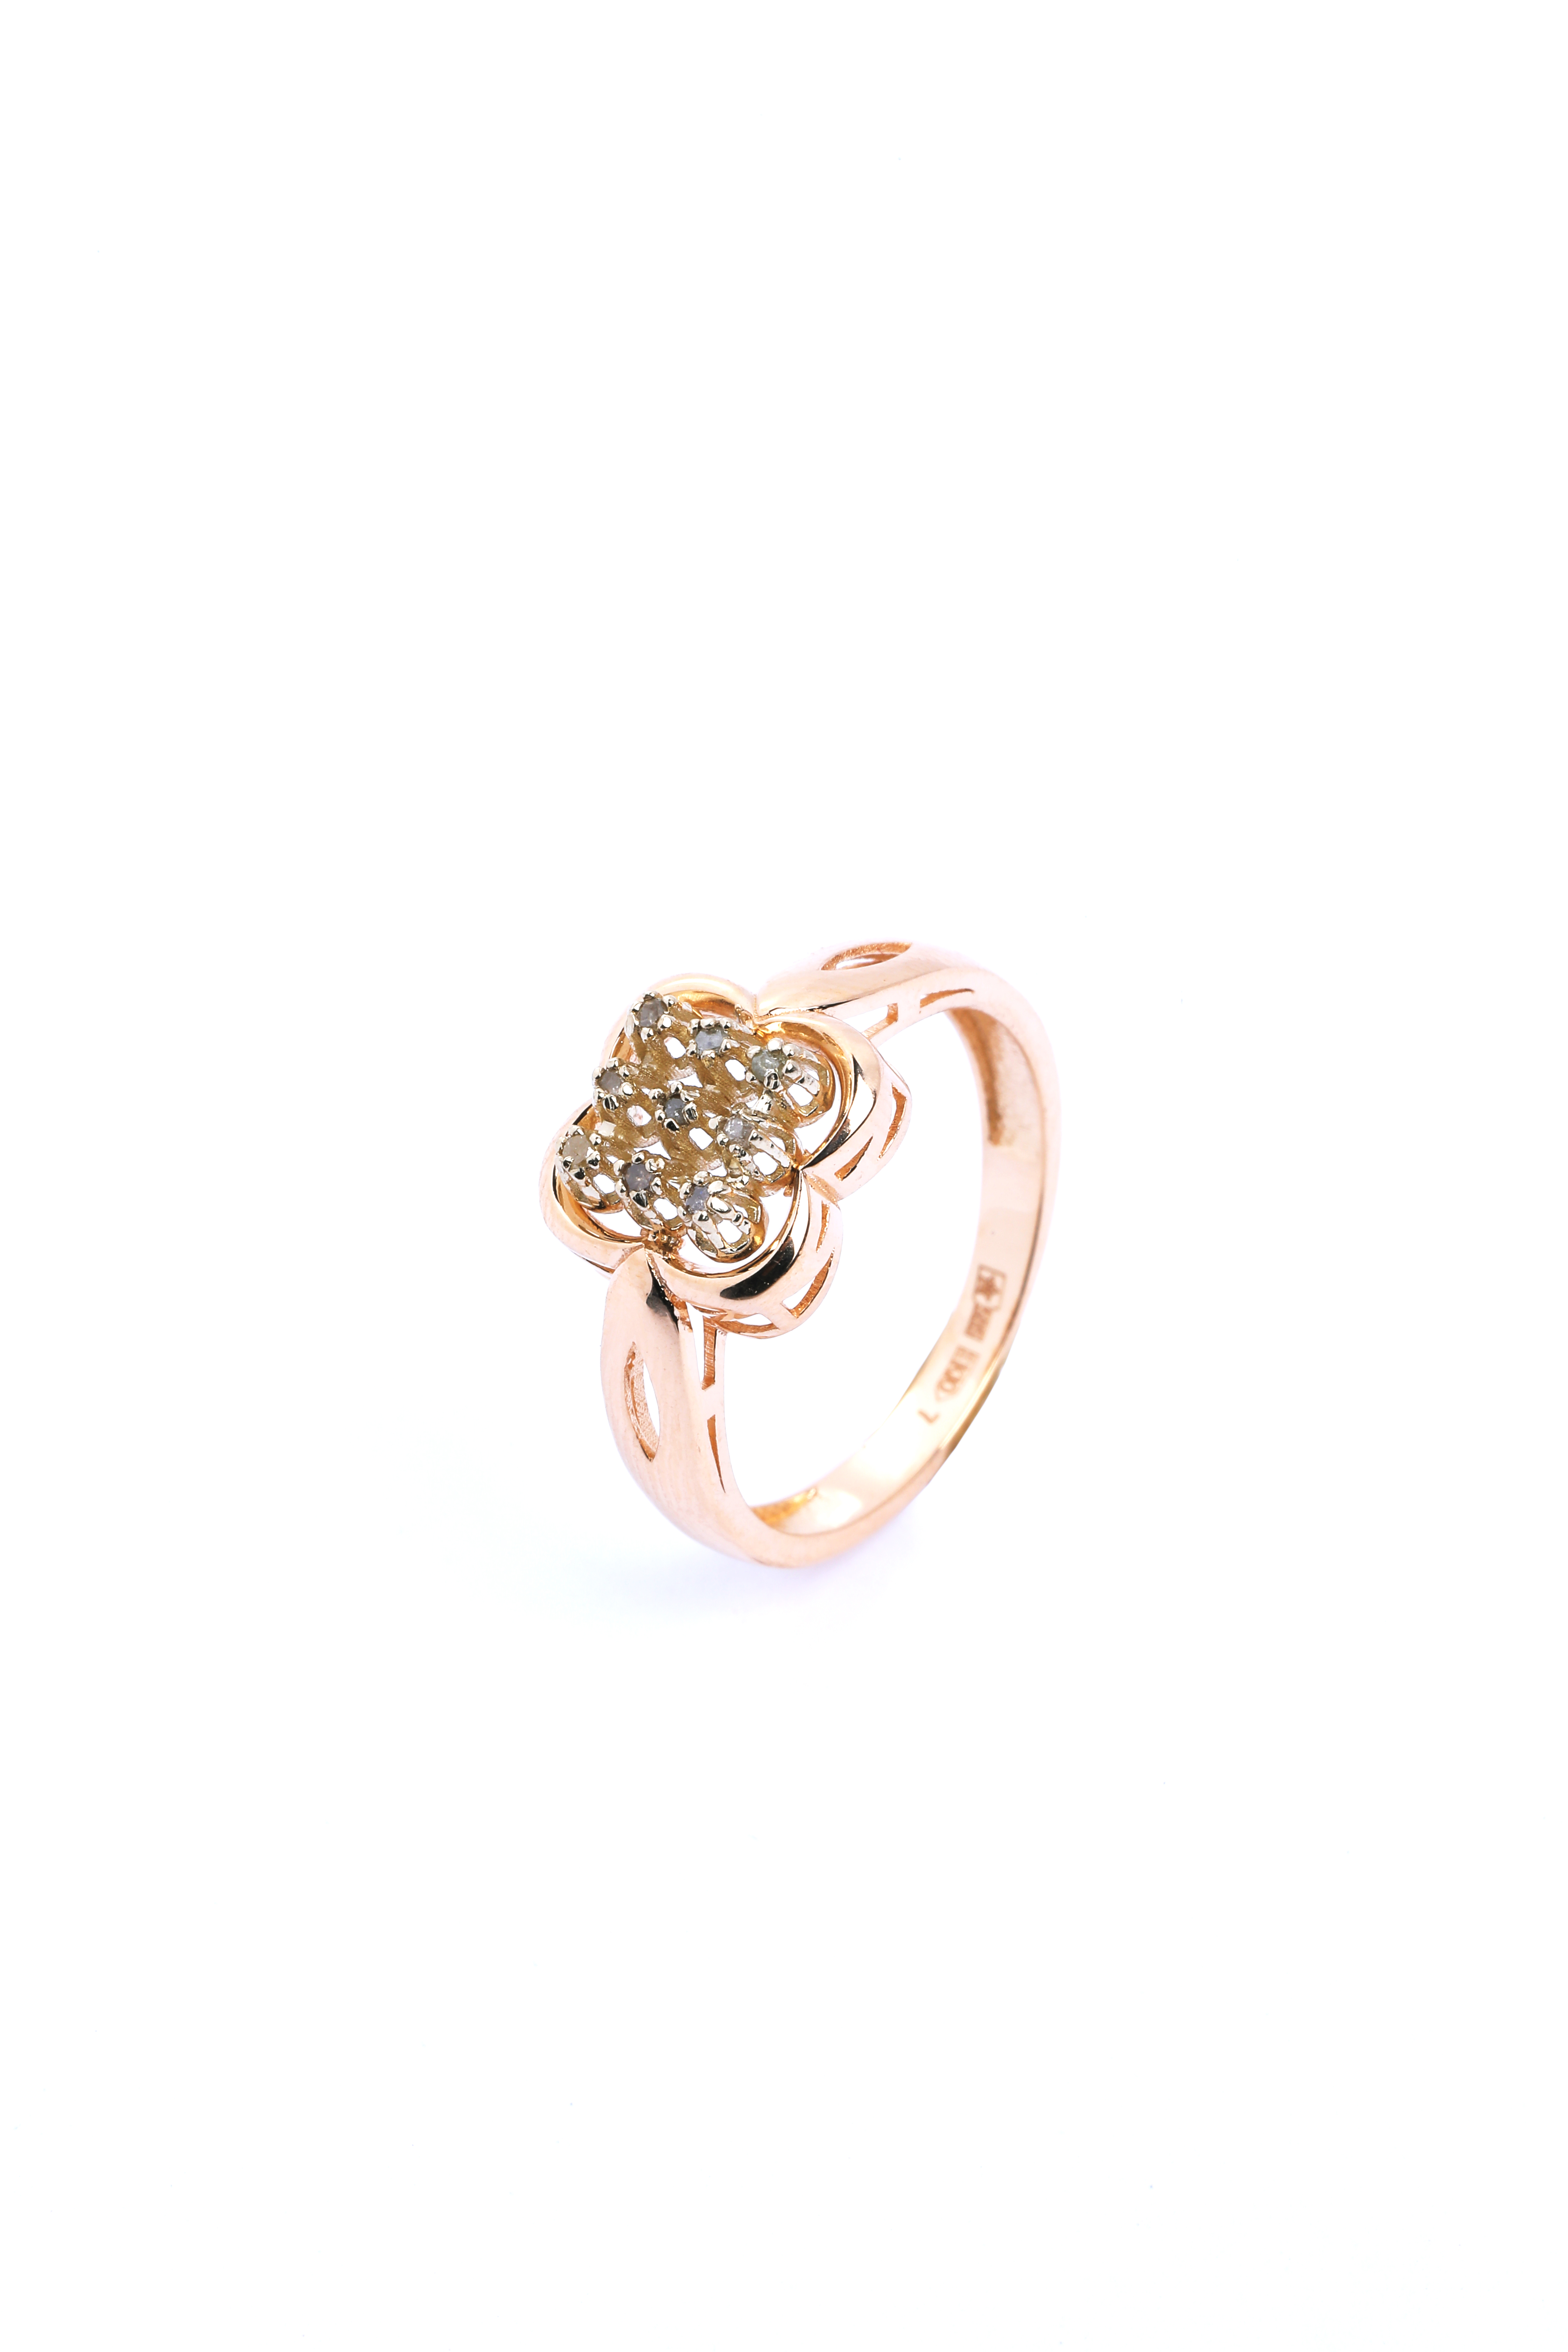 Кольцо Клевер золото. Золотое кольцо Клевер. Кольцо Клевер золото 585. Кольца из Узбекистана.